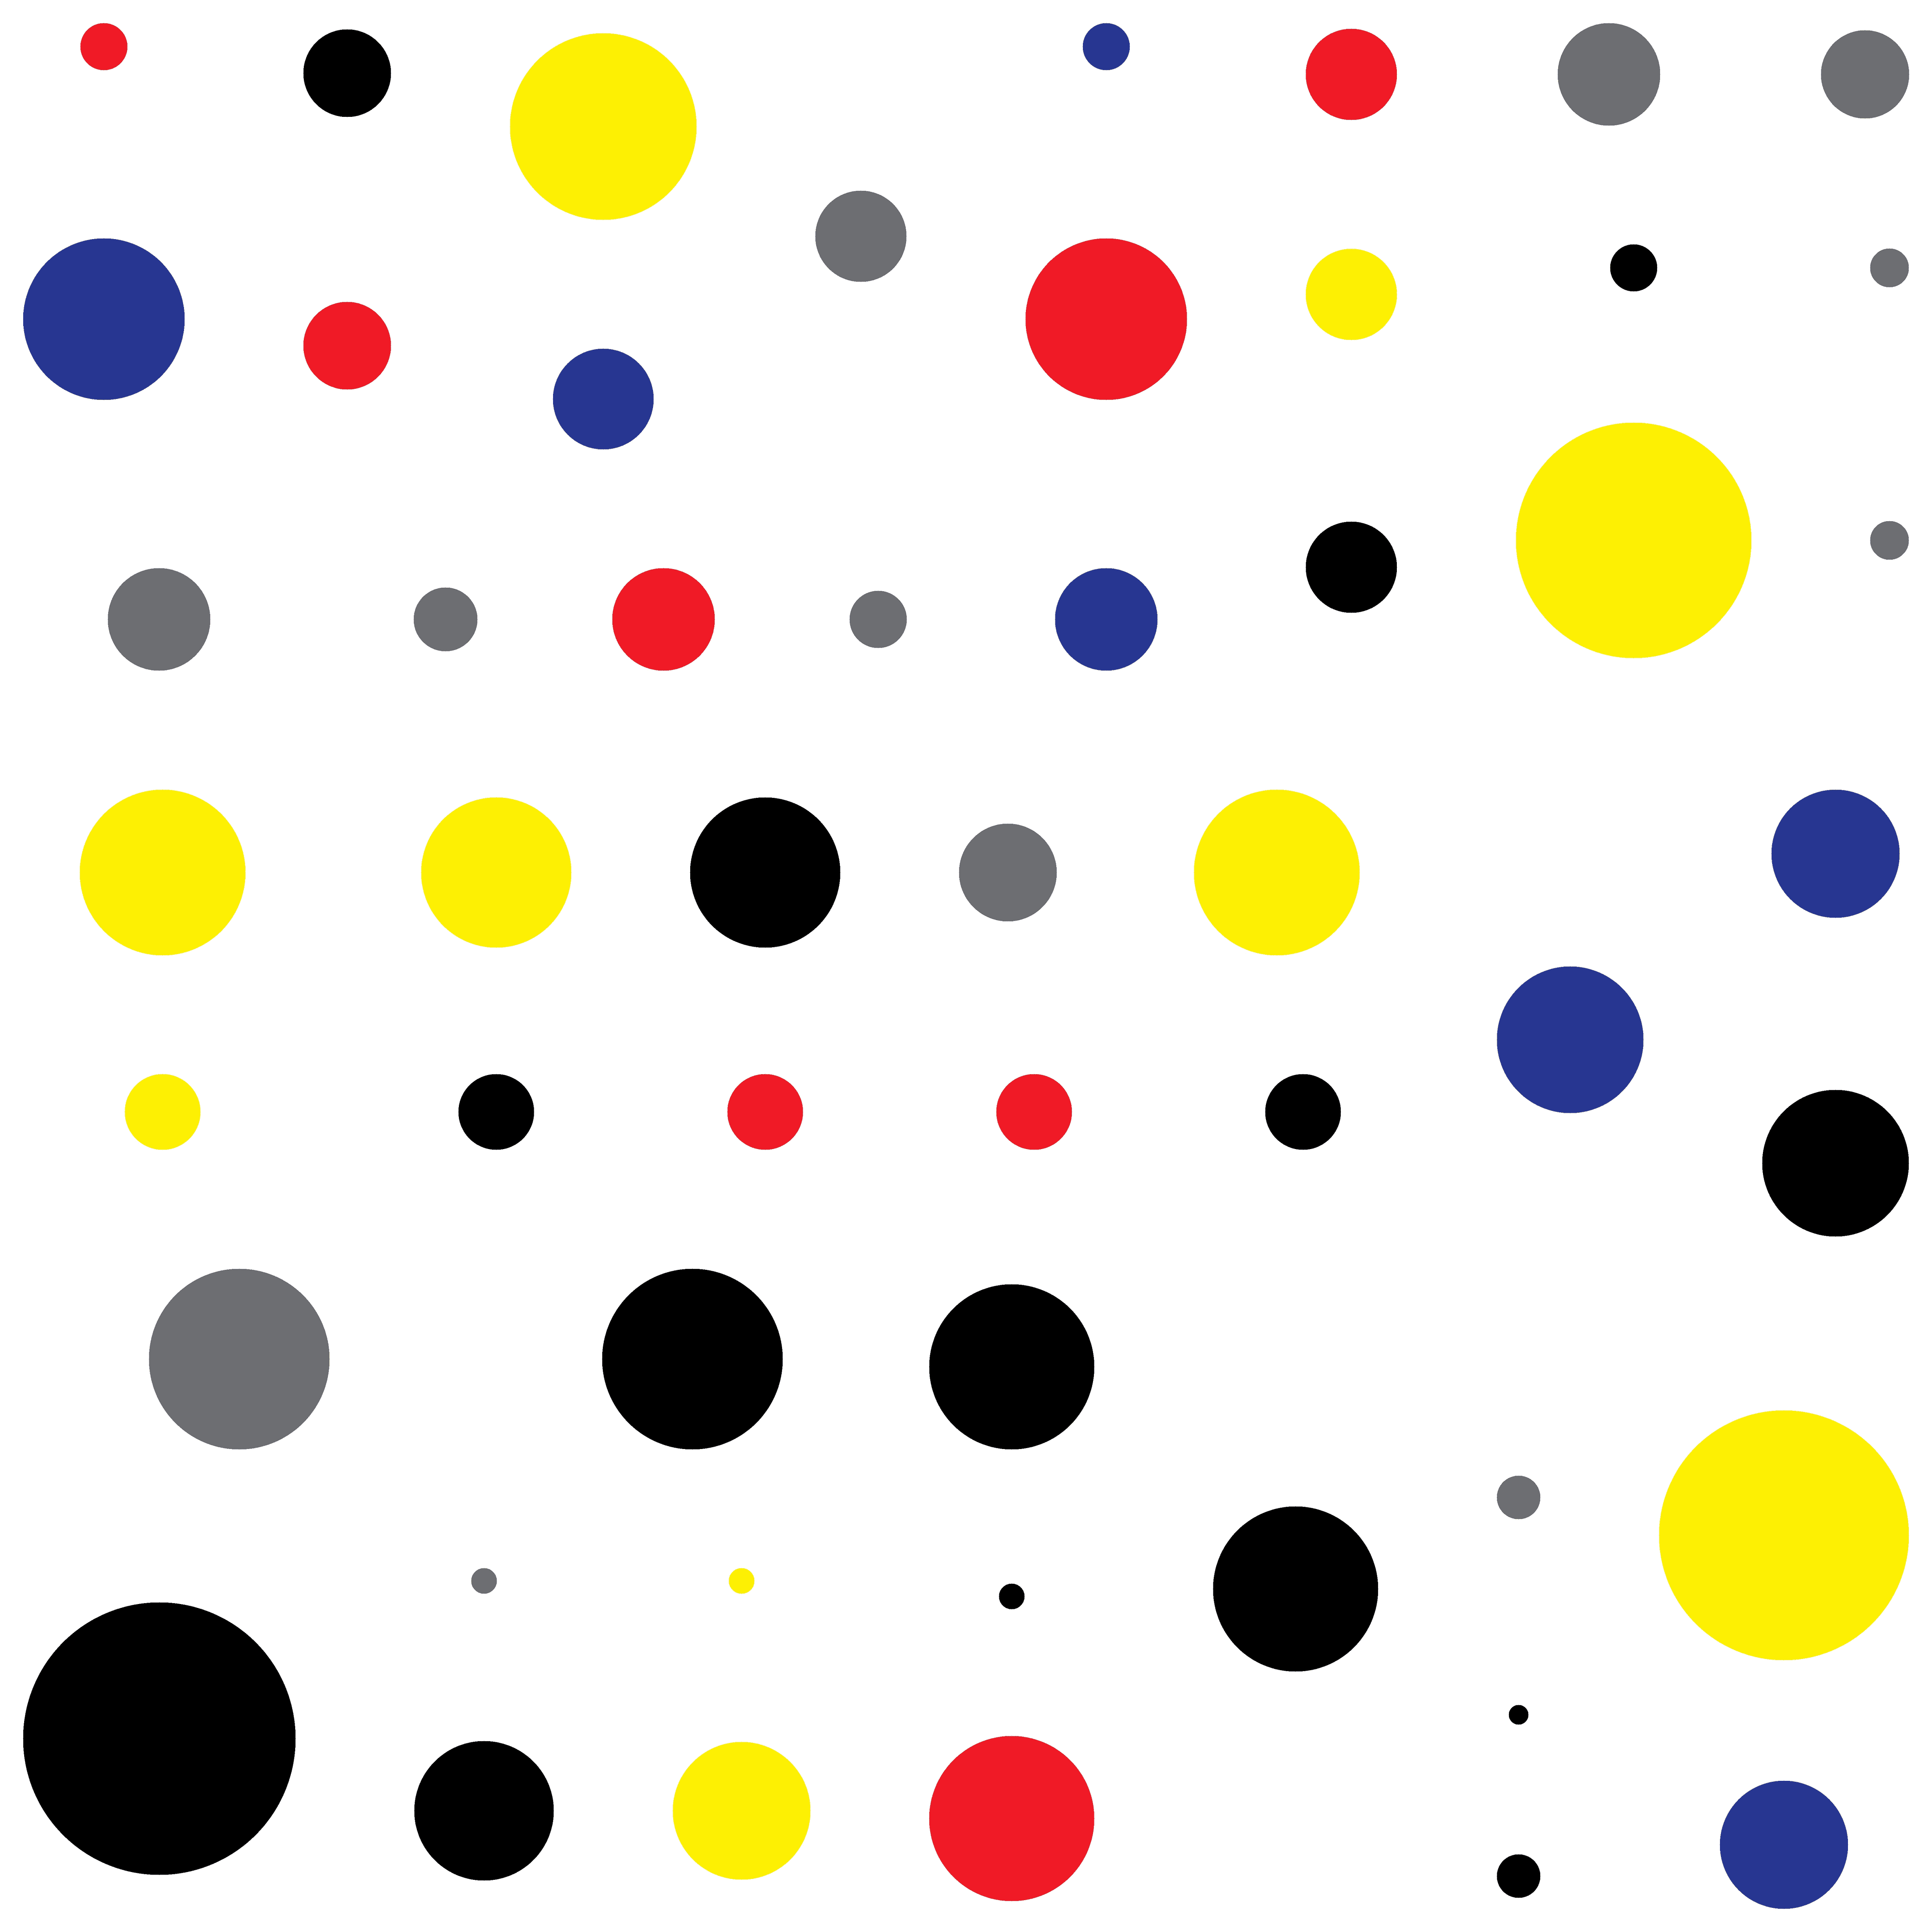 'Number 52' - Circles - MooniTooki Project - Abstract NFT Art @ 6480 x 6480 pixels. 